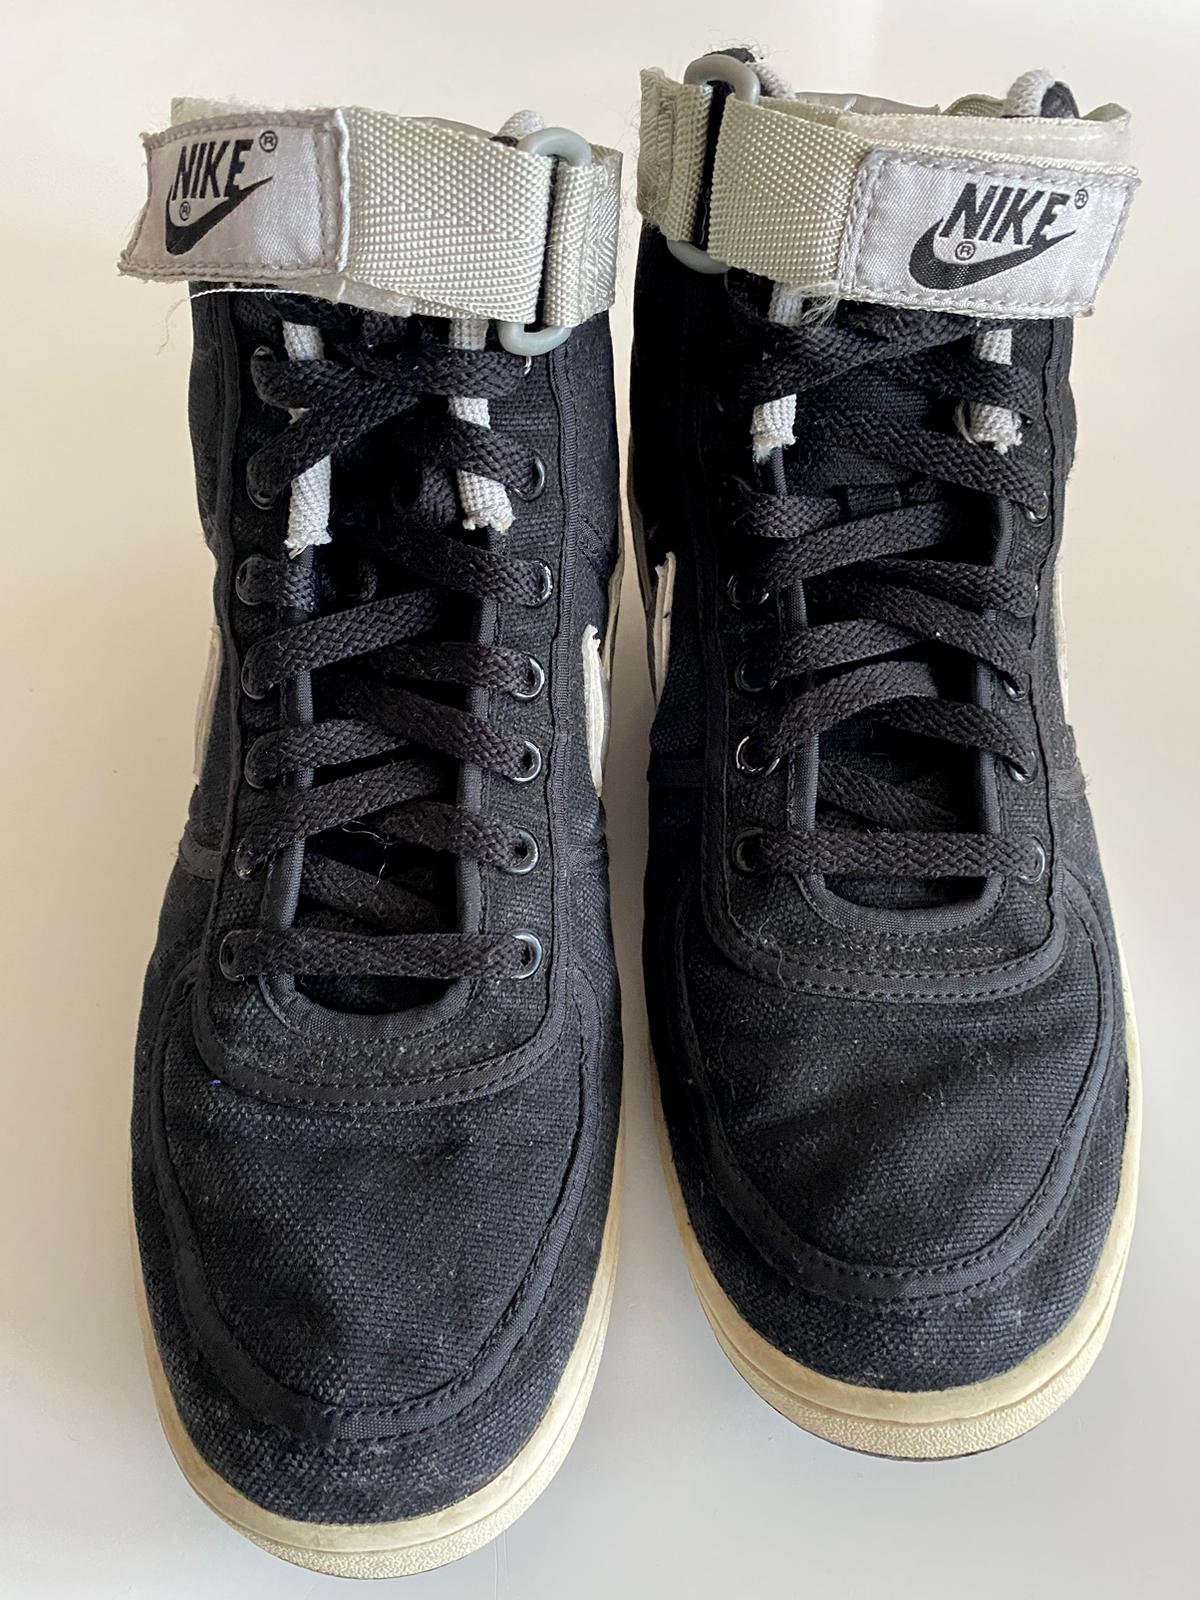 Nike Vandal Kyle Reese Terminator Sneakers - Etsy